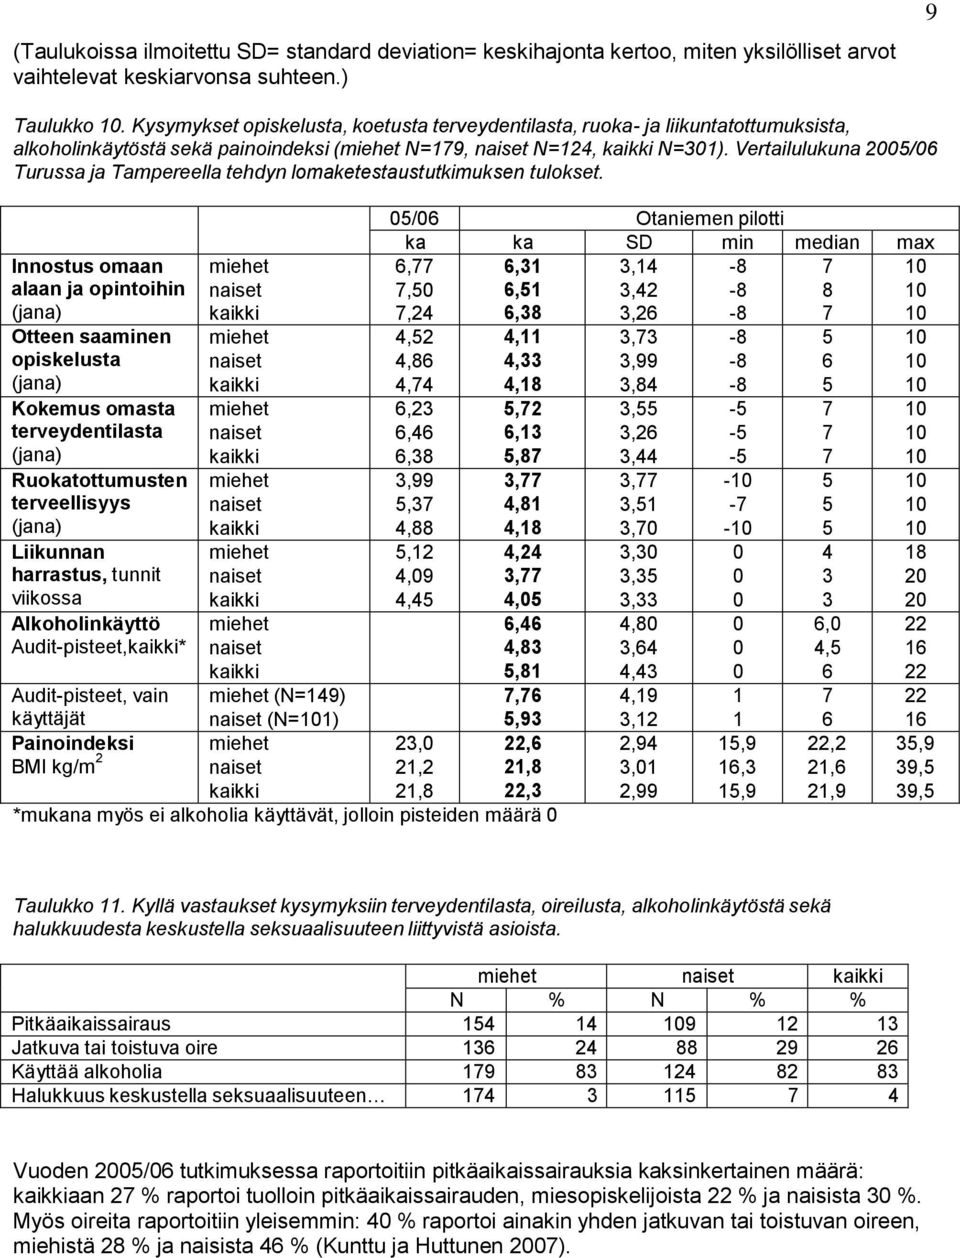 Vertailulukuna 2005/06 Turussa ja Tampereella tehdyn lomaketestaustutkimuksen tulokset.